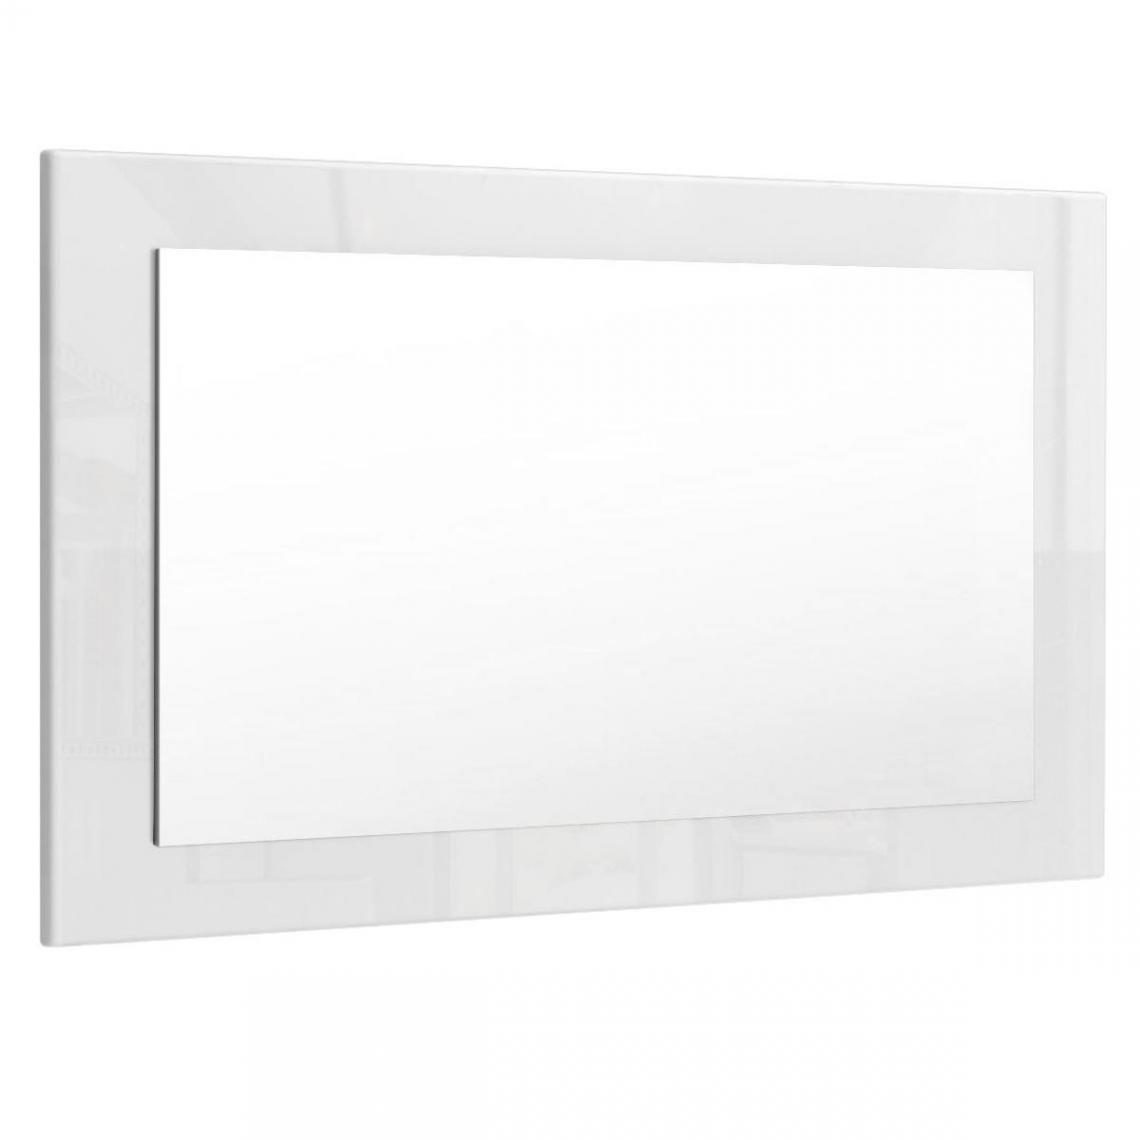 Mpc - Miroir blanc brillant (HxLxP): 45 x 89 x 2 - Miroir de salle de bain